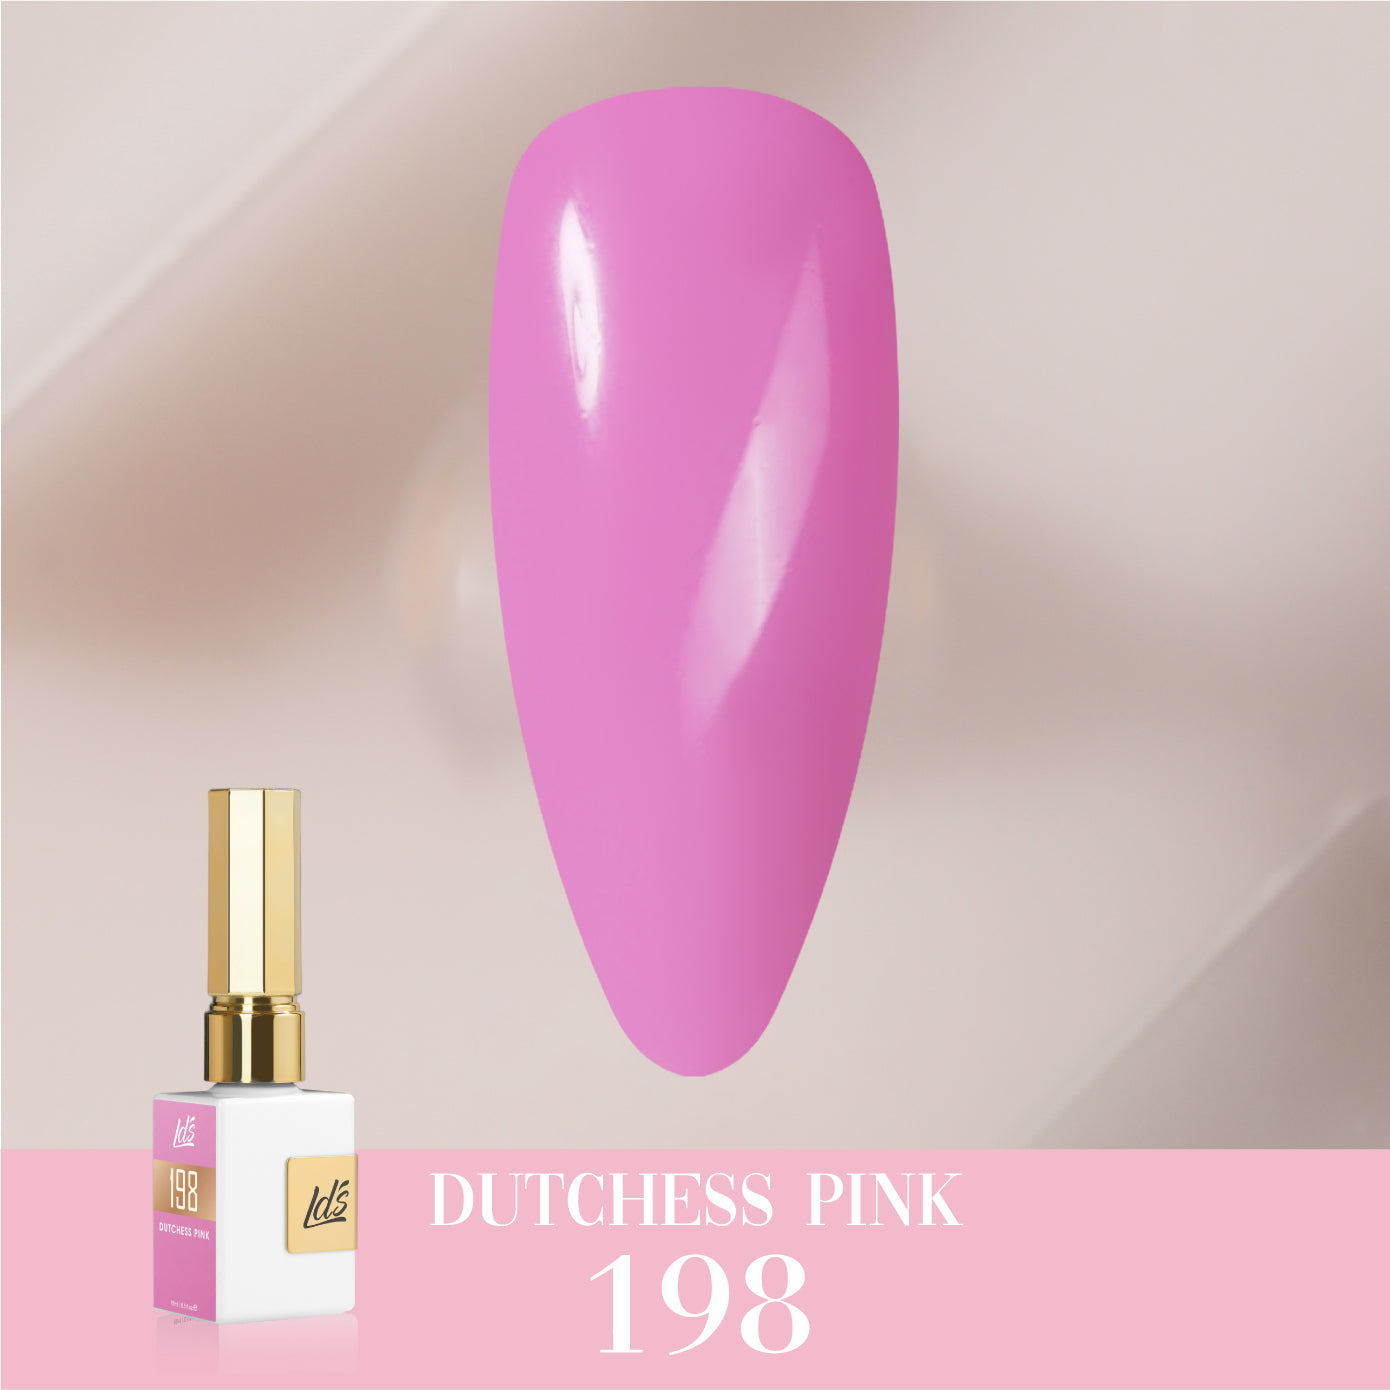 LDS Color Craze Collection - 198 Dutchess Pink - Gel Polish 0.5oz